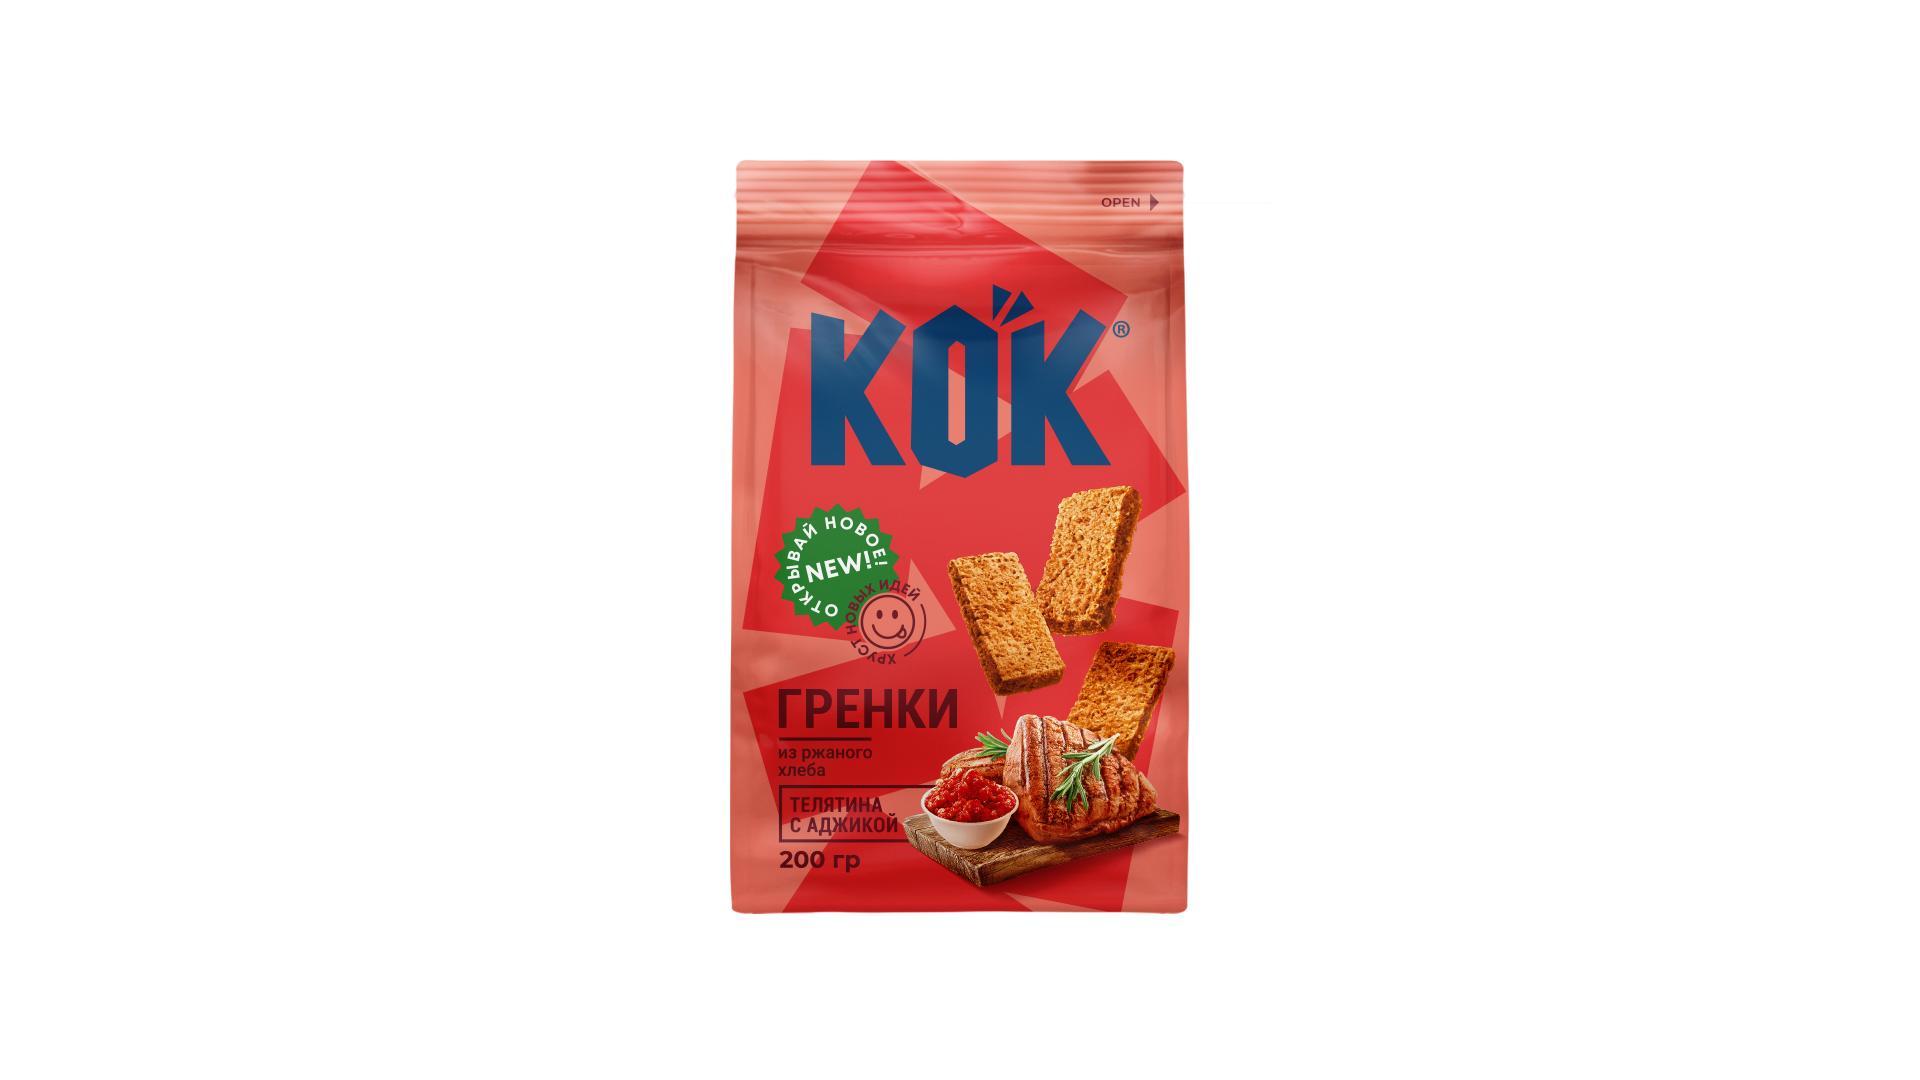 Гренки Kok из ржаного хлеба со вкусом телятины с аджикой 200 гр., флоу-пак